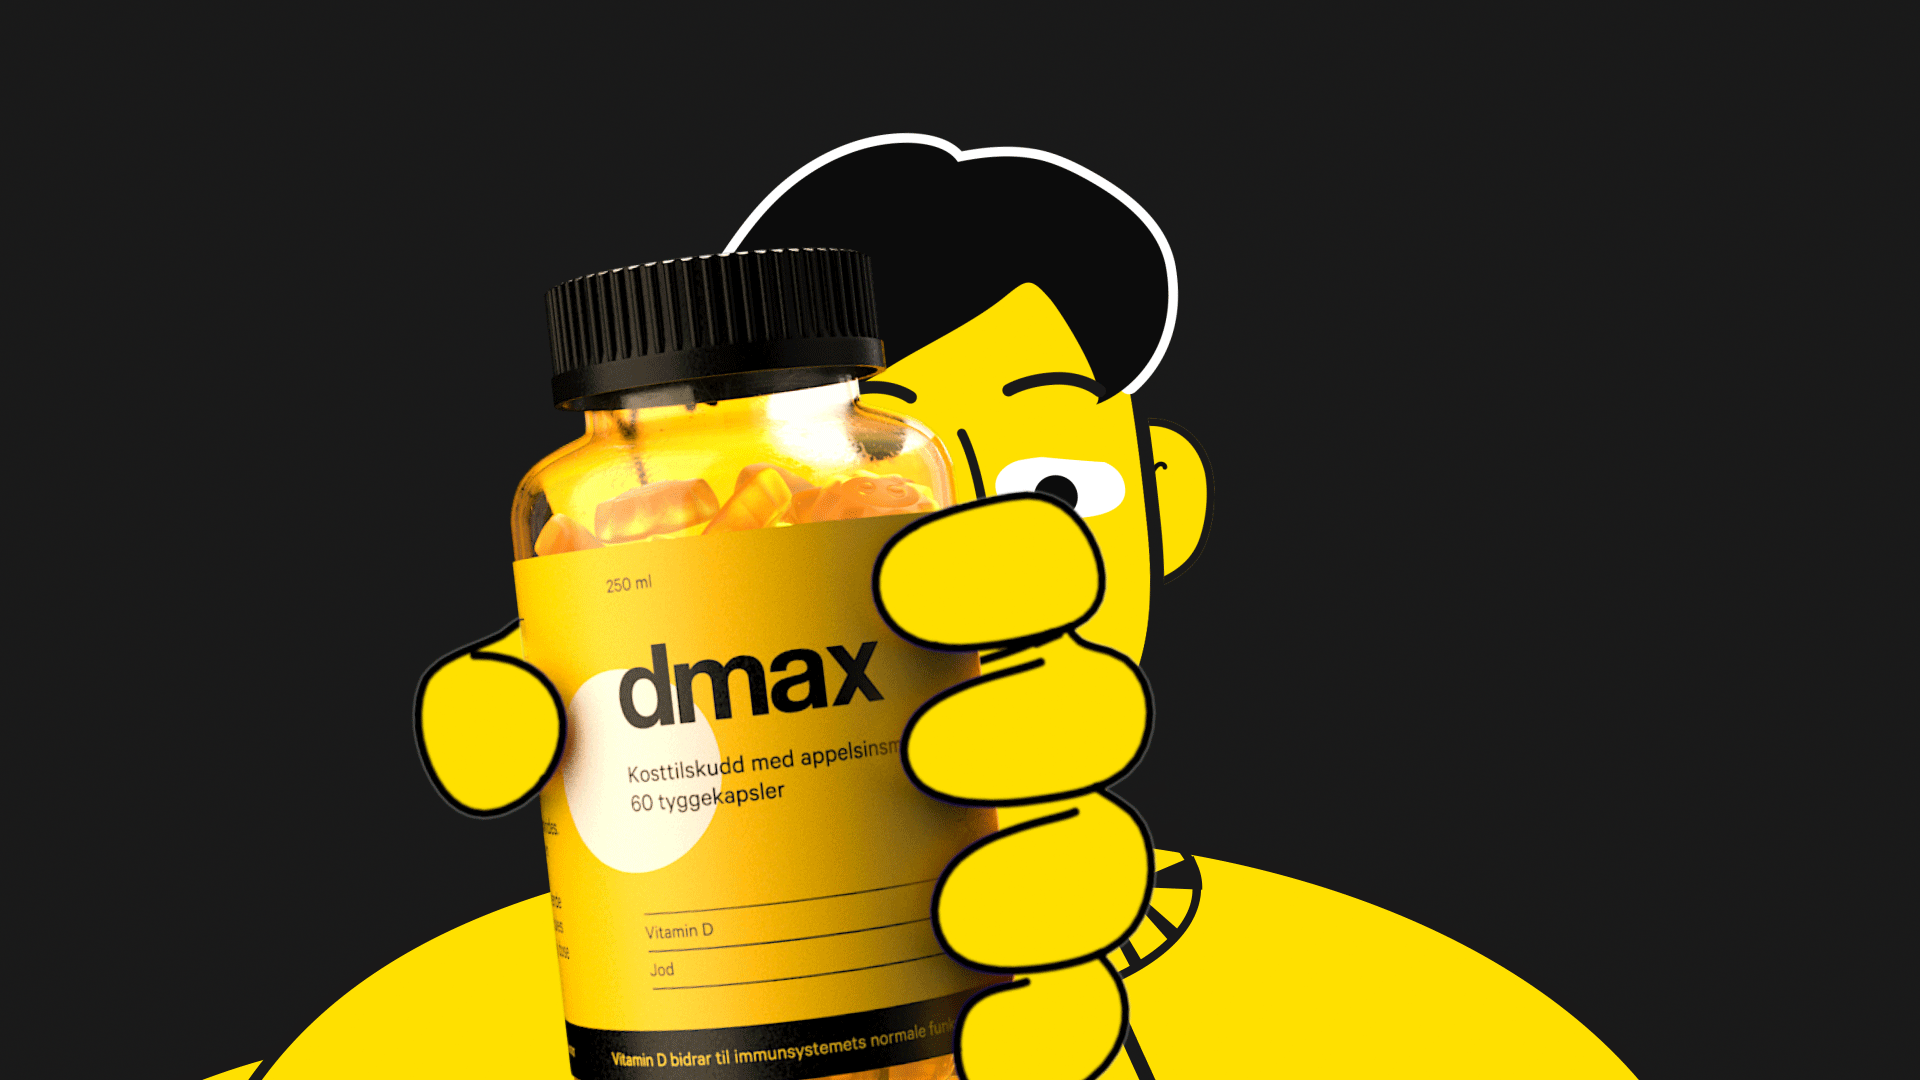 Animasjon for dmax d vitamin hvor 2d karakter holder på en 3d kapselbeholdere i haanden